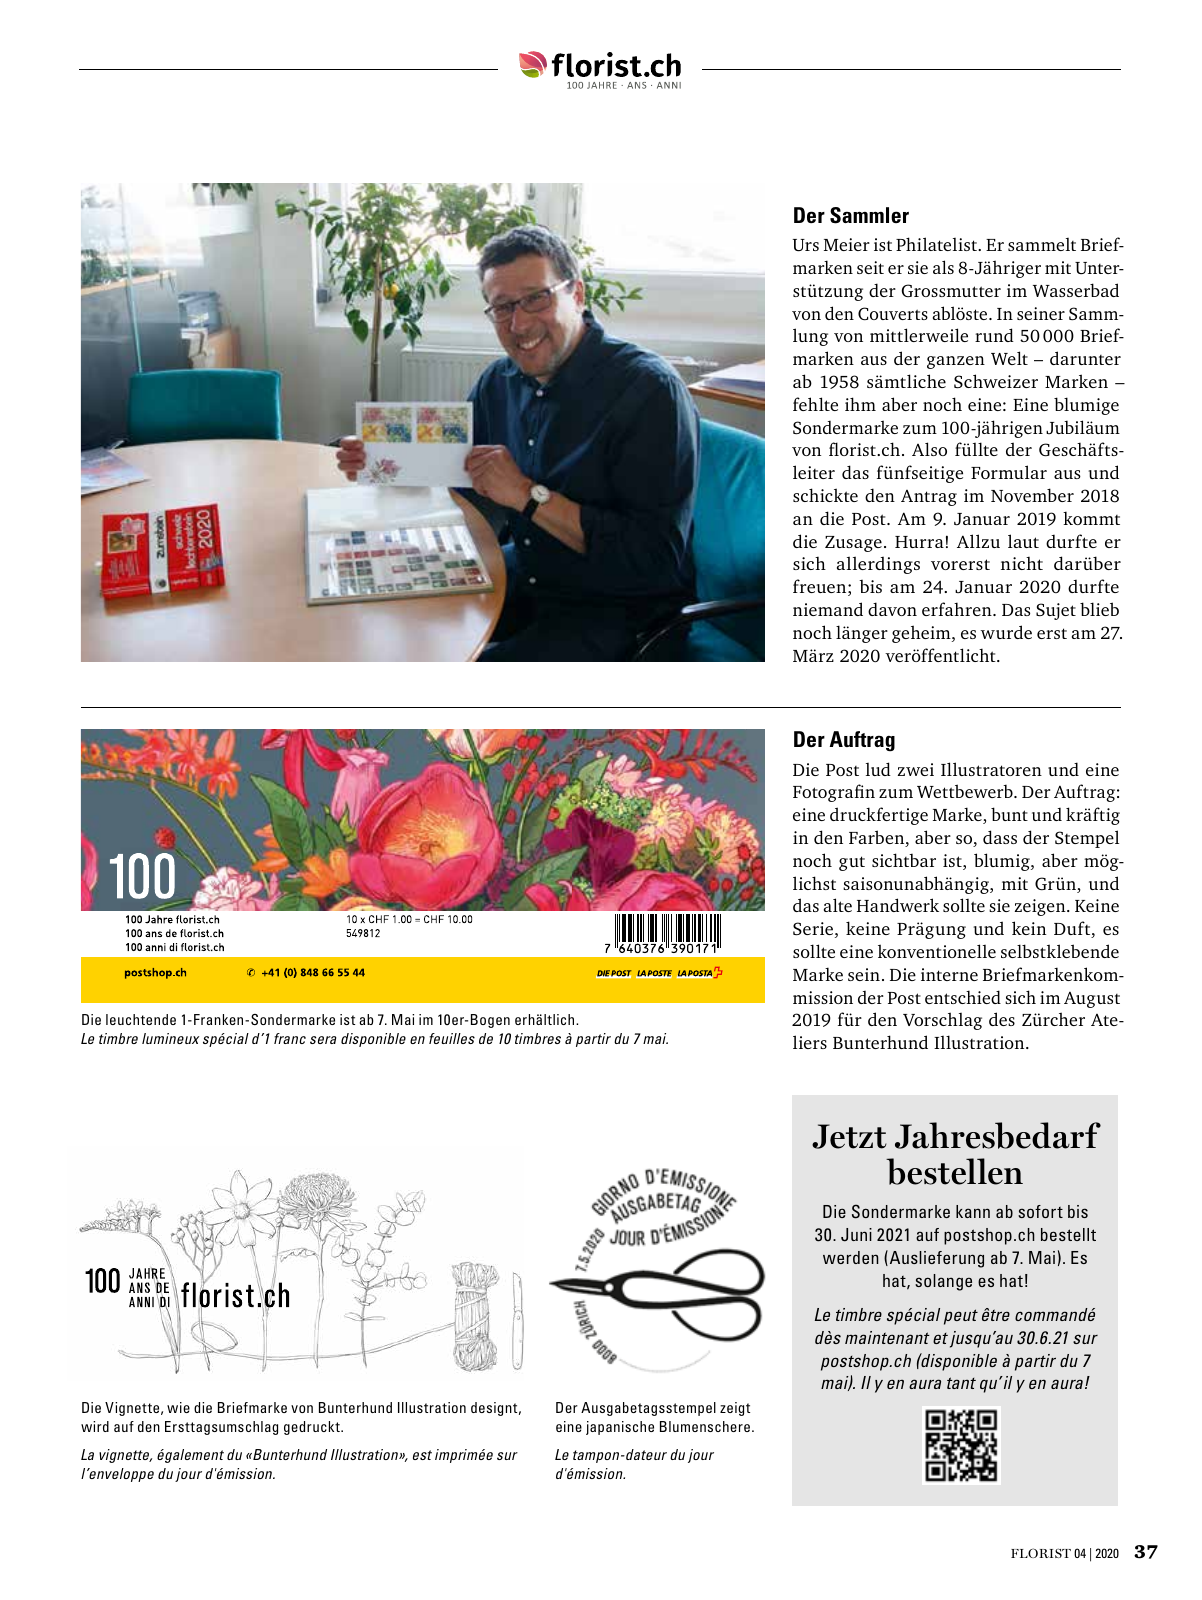 Vorschau Florist - Ausgabe April 2020 Seite 35